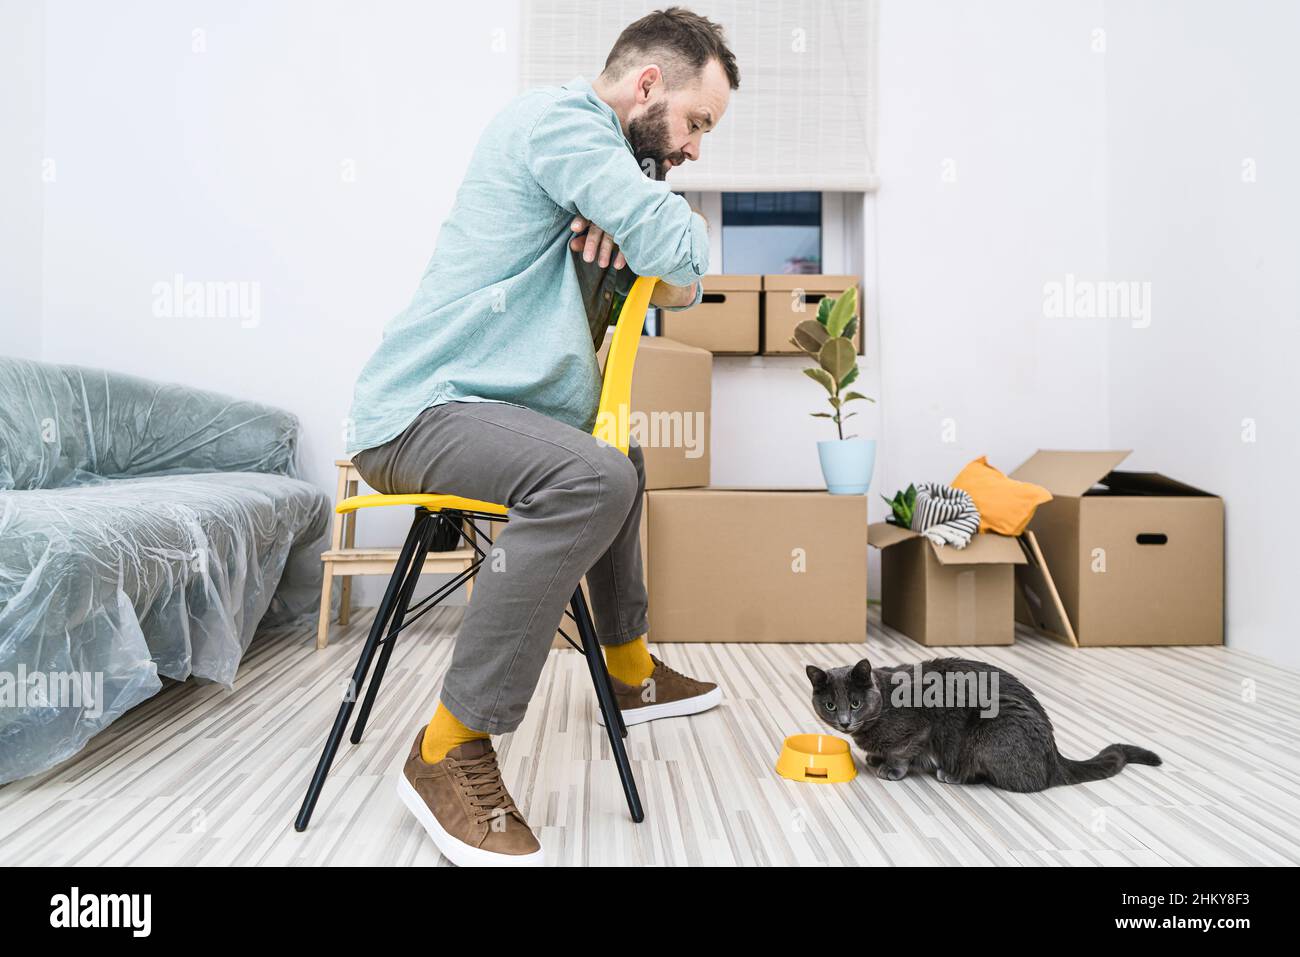 L'homme est assis sur une chaise jaune devant son chat avec le fond des boîtes mobiles, tout en se déplaçant dans un nouvel appartement. Banque D'Images